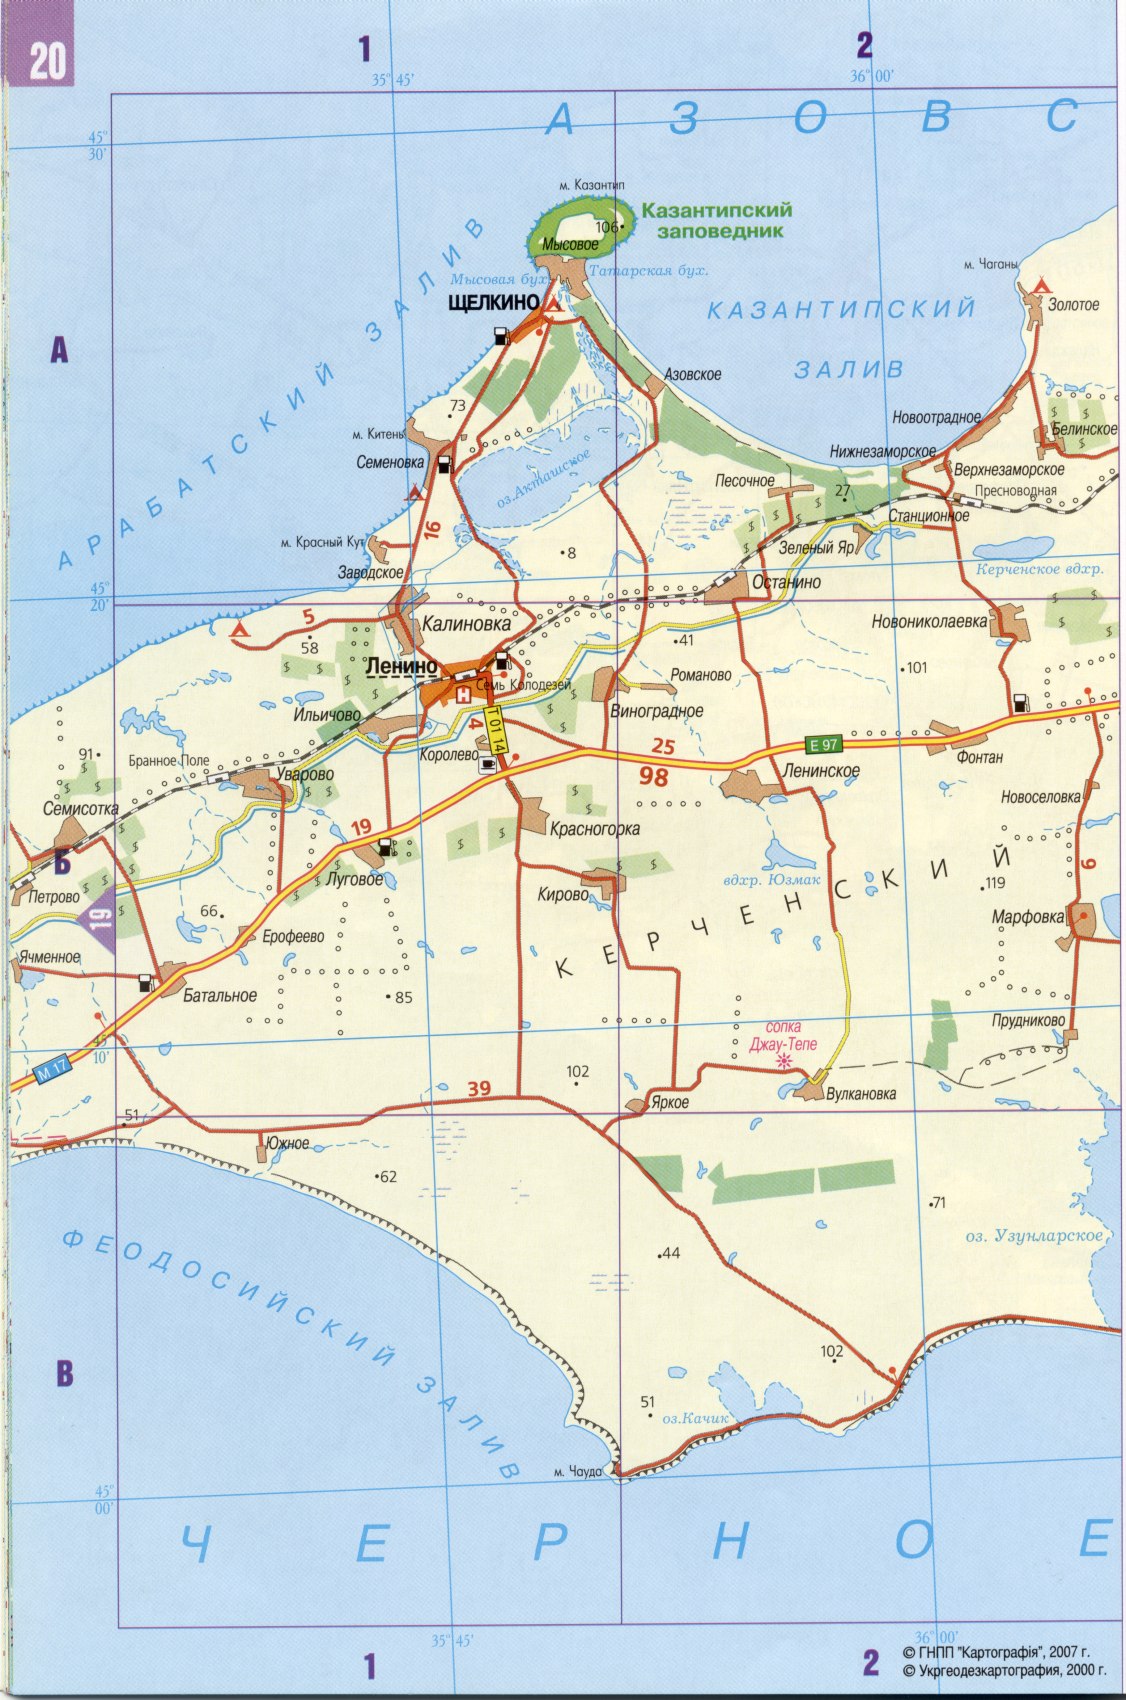 Карта Керченского полуострова. Подробная карта автомобильных дорог - Керченский полуостров, A0 - 